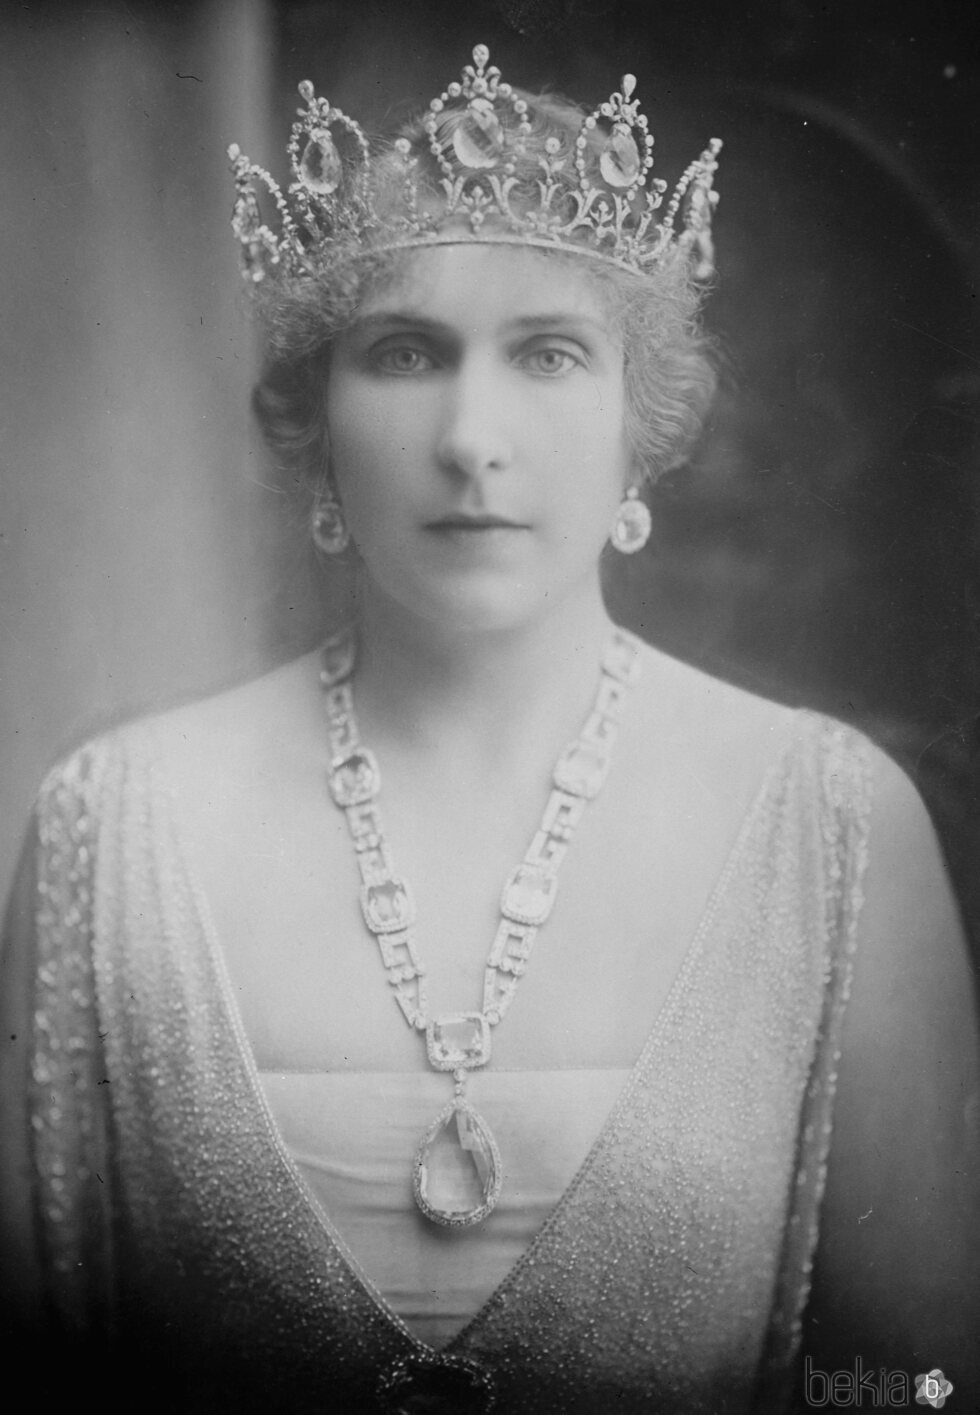 La Reina Victoria Eugenia con la tiara y el aderezo de aguamarinas